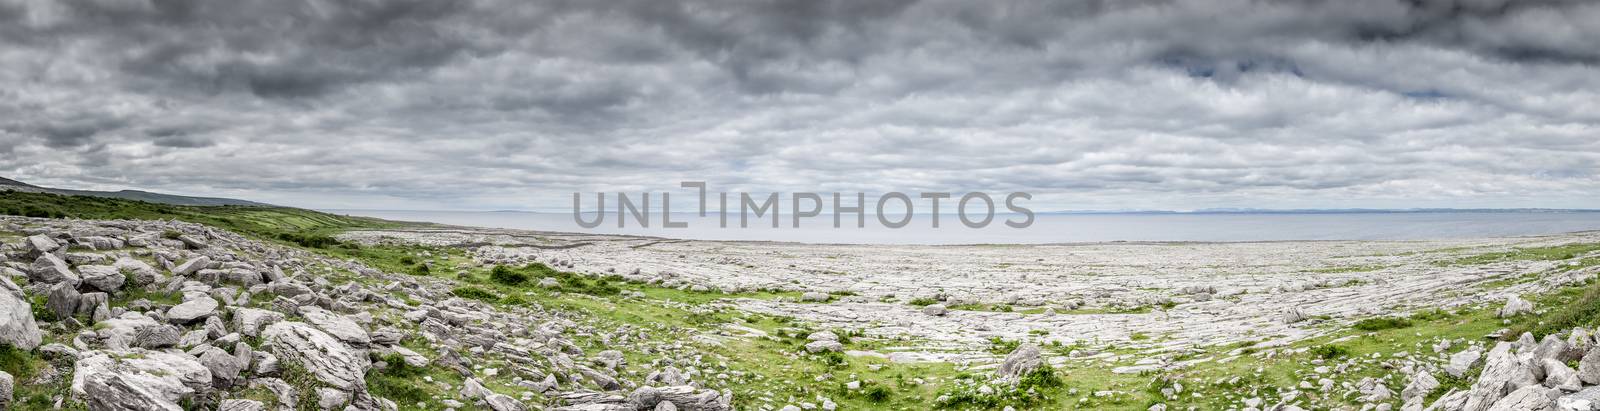 An image of the Burren in Ireland